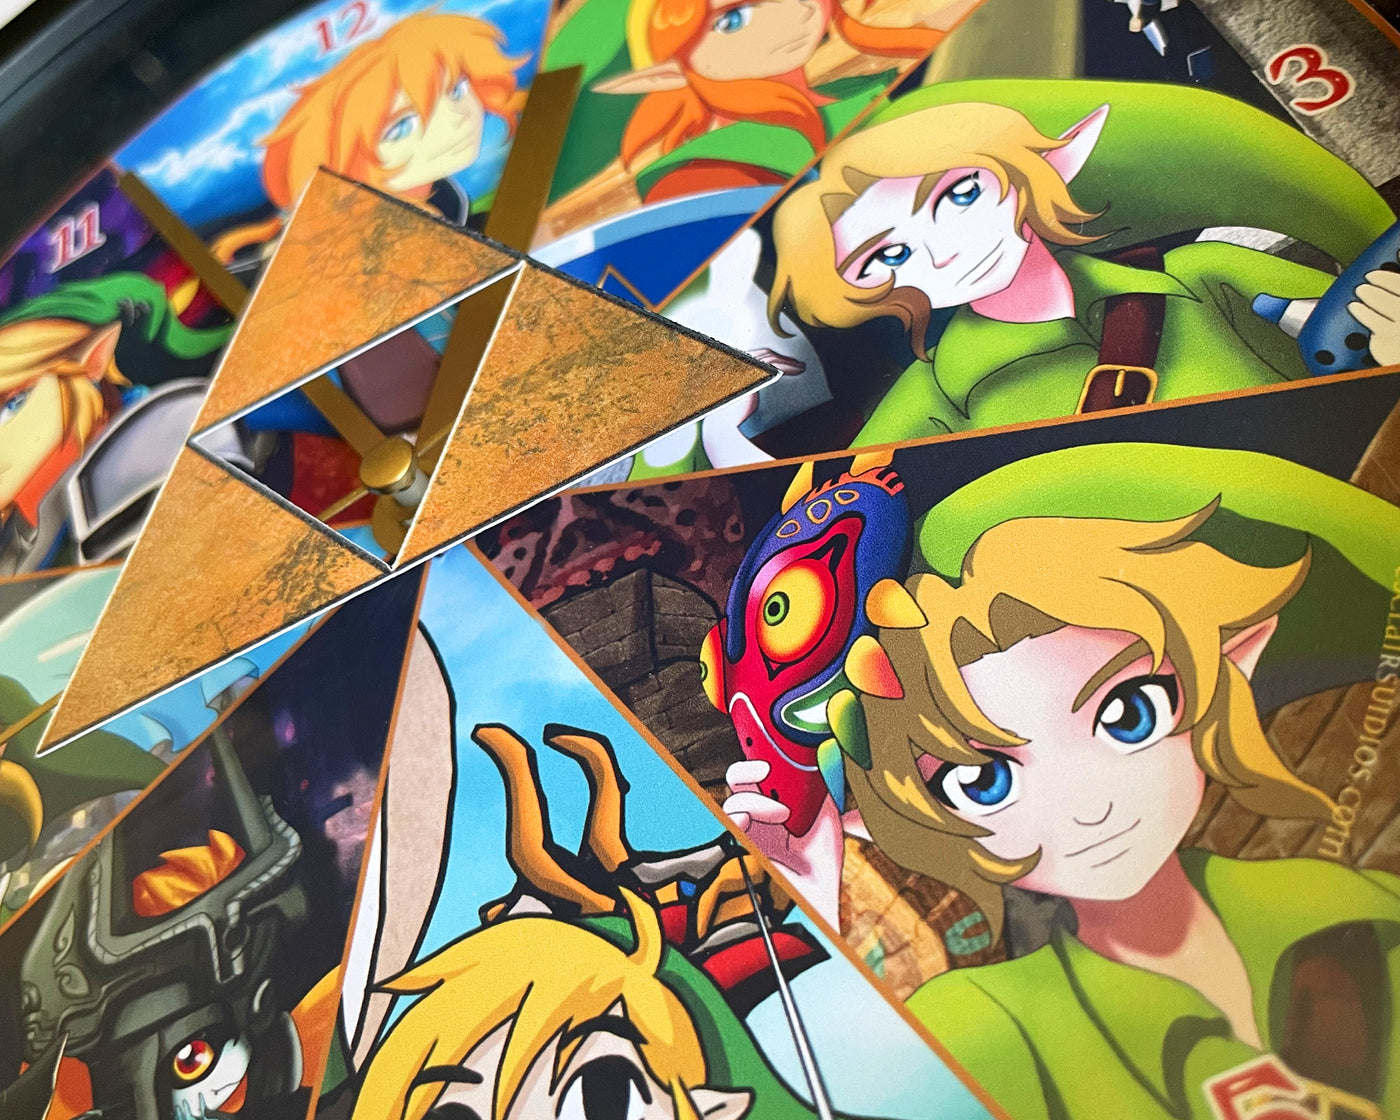 Legend of Zelda - Majora's Mask - Wall Clock – Esclair Studios